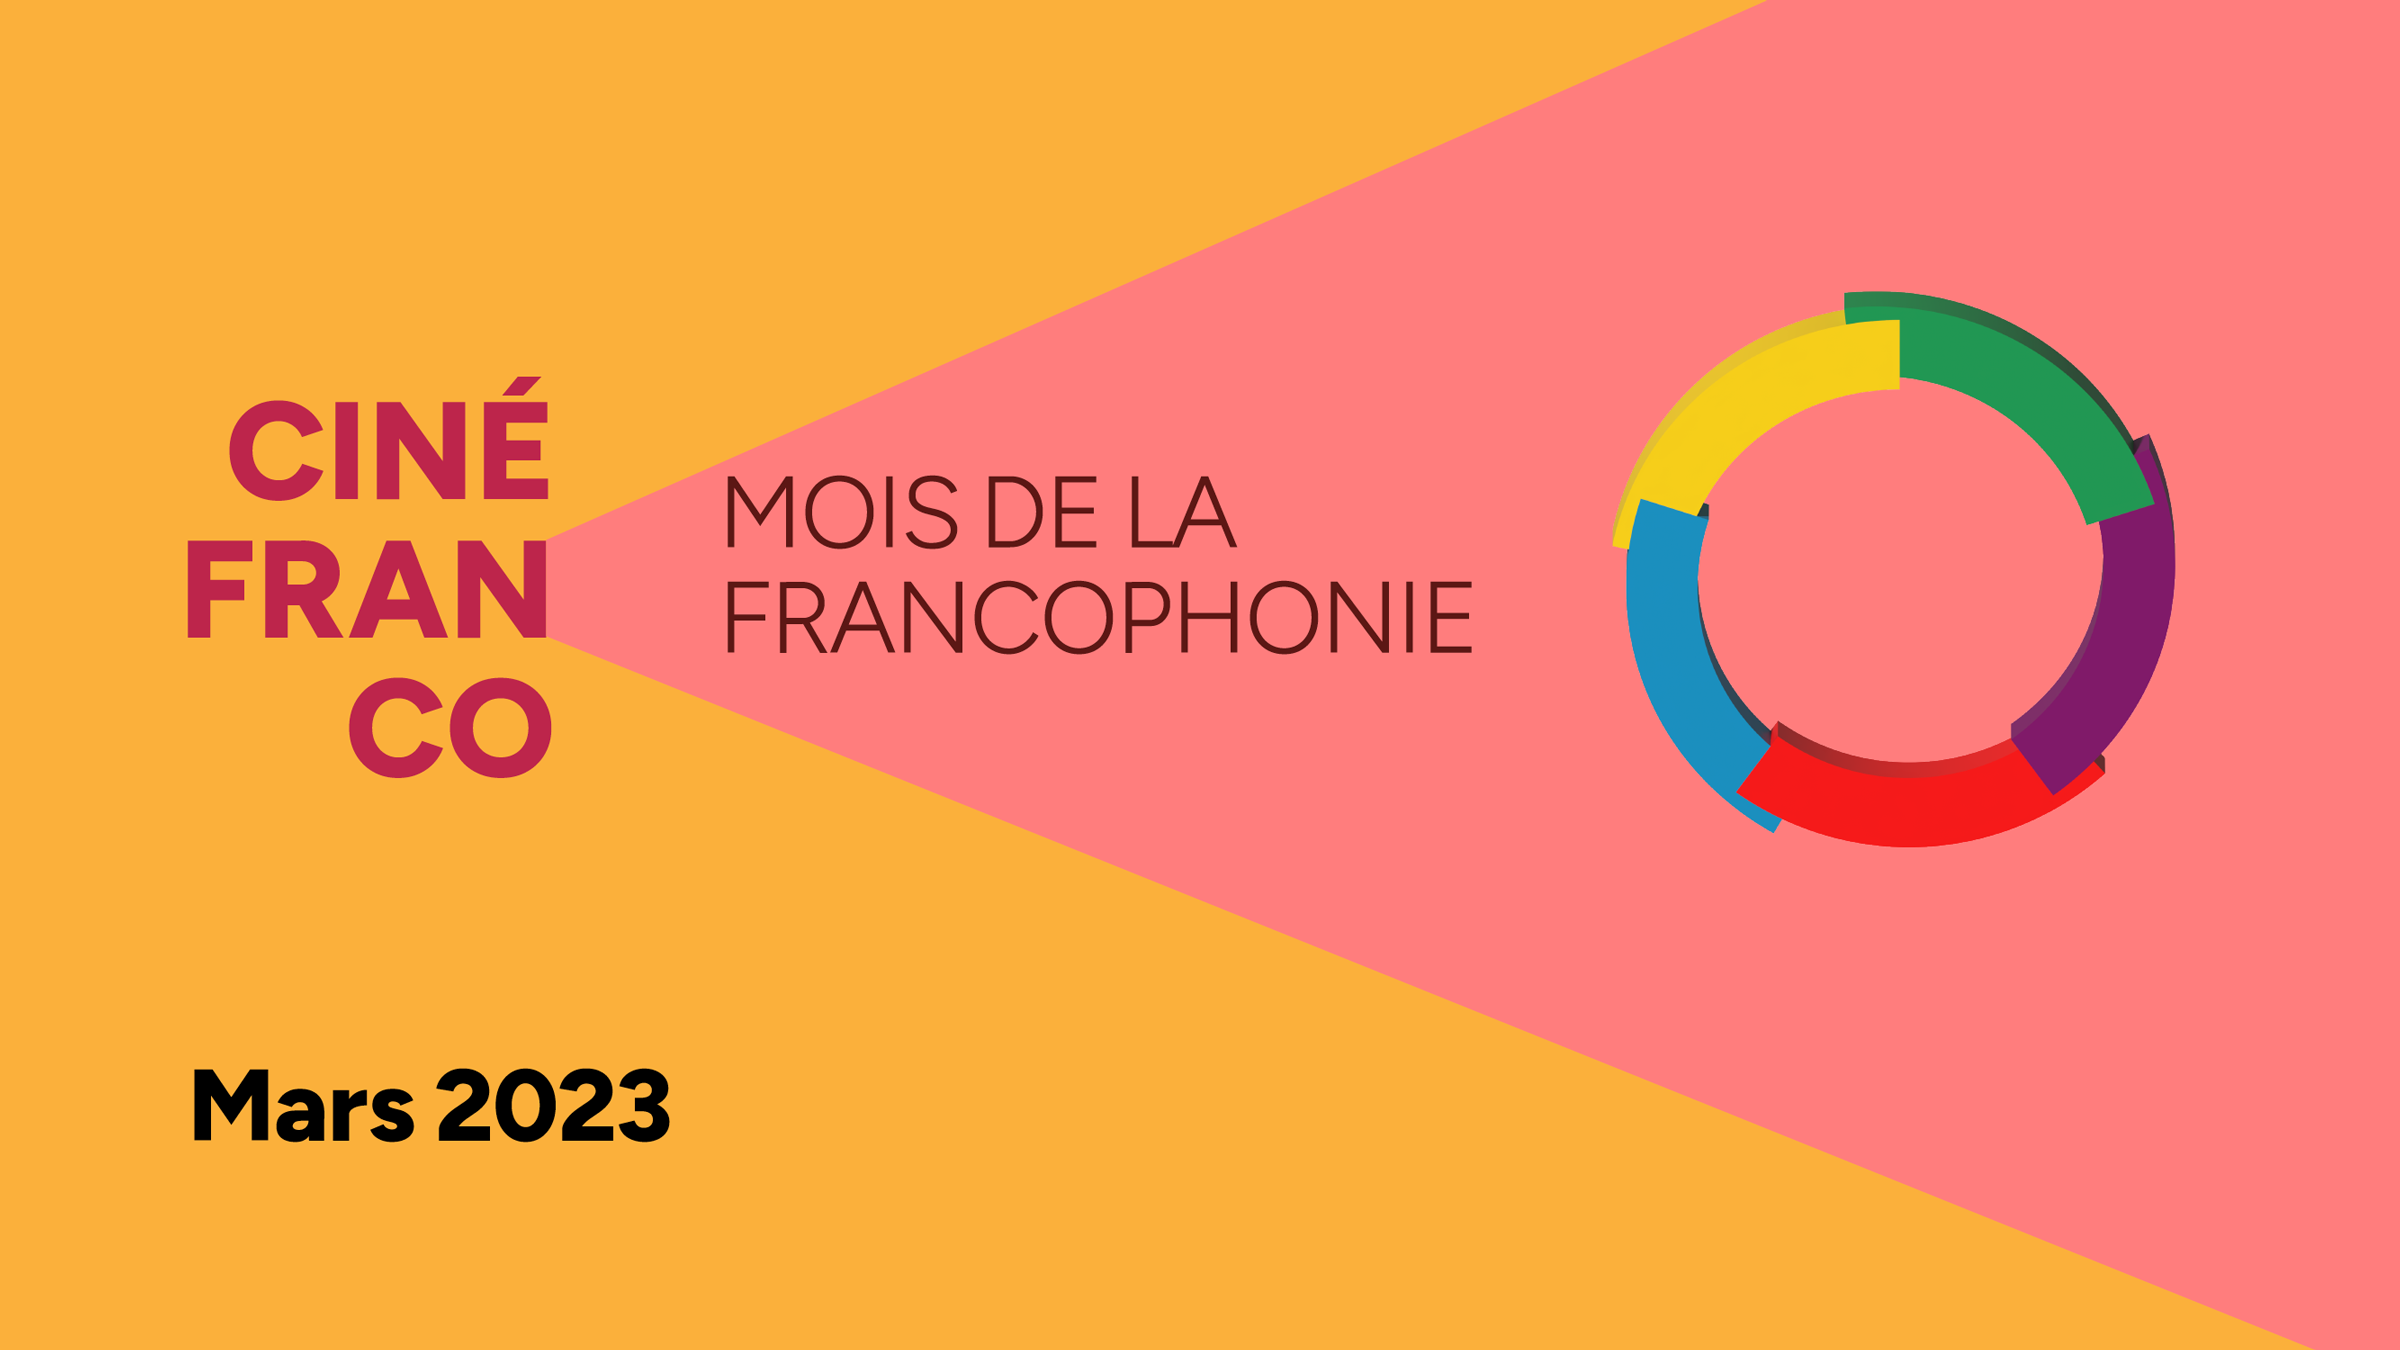 Mois de la francophonie 2023